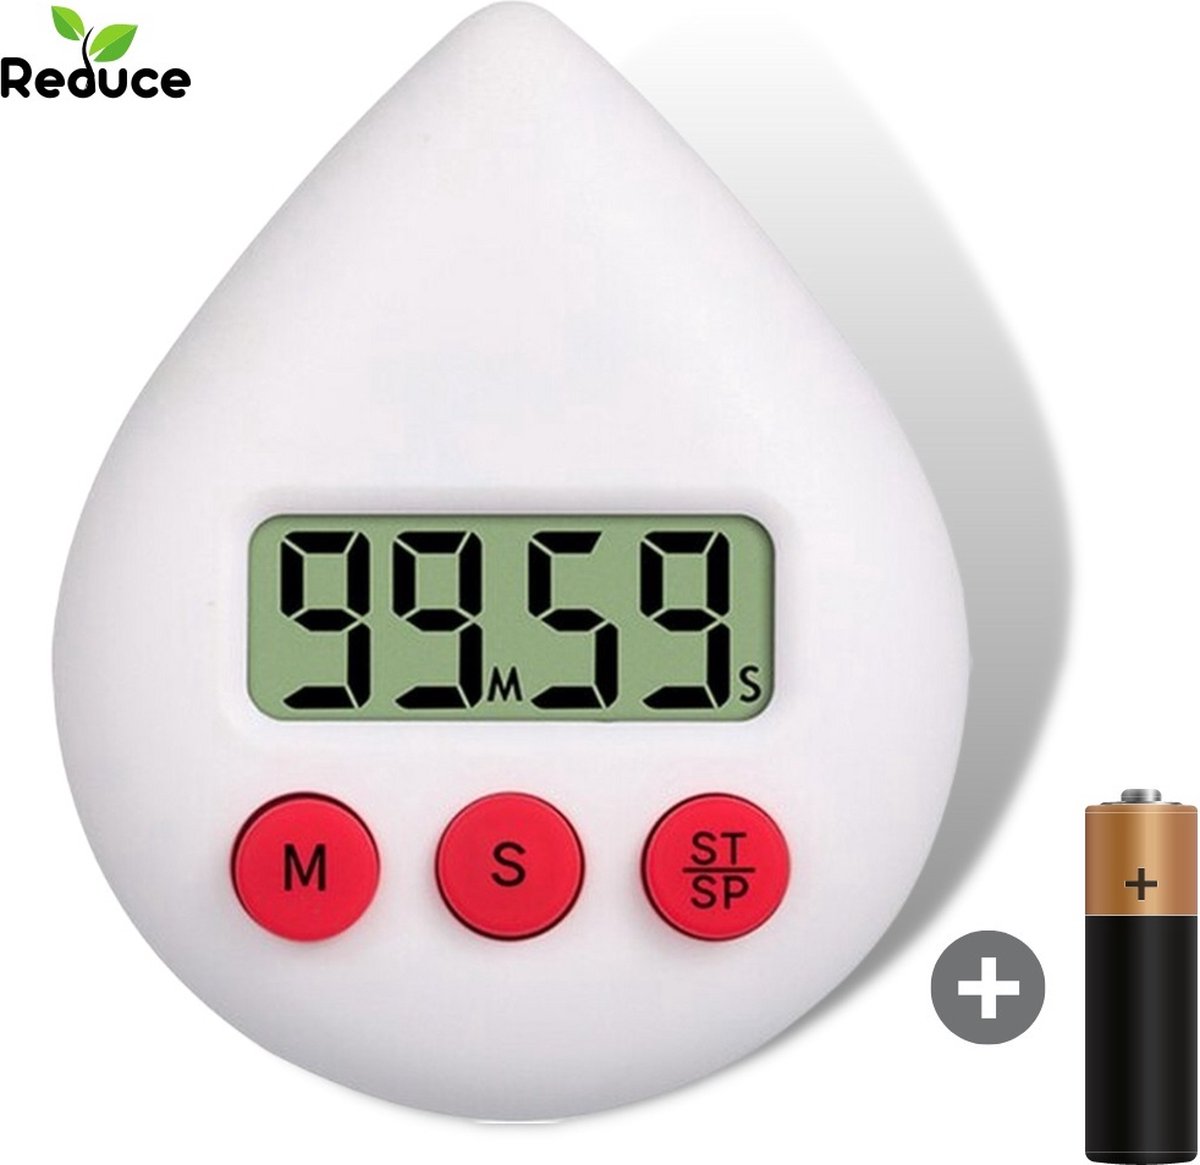 Digitale timer - energie besparen - douche, keuken, badkamer - Lime Green / Lime Groen